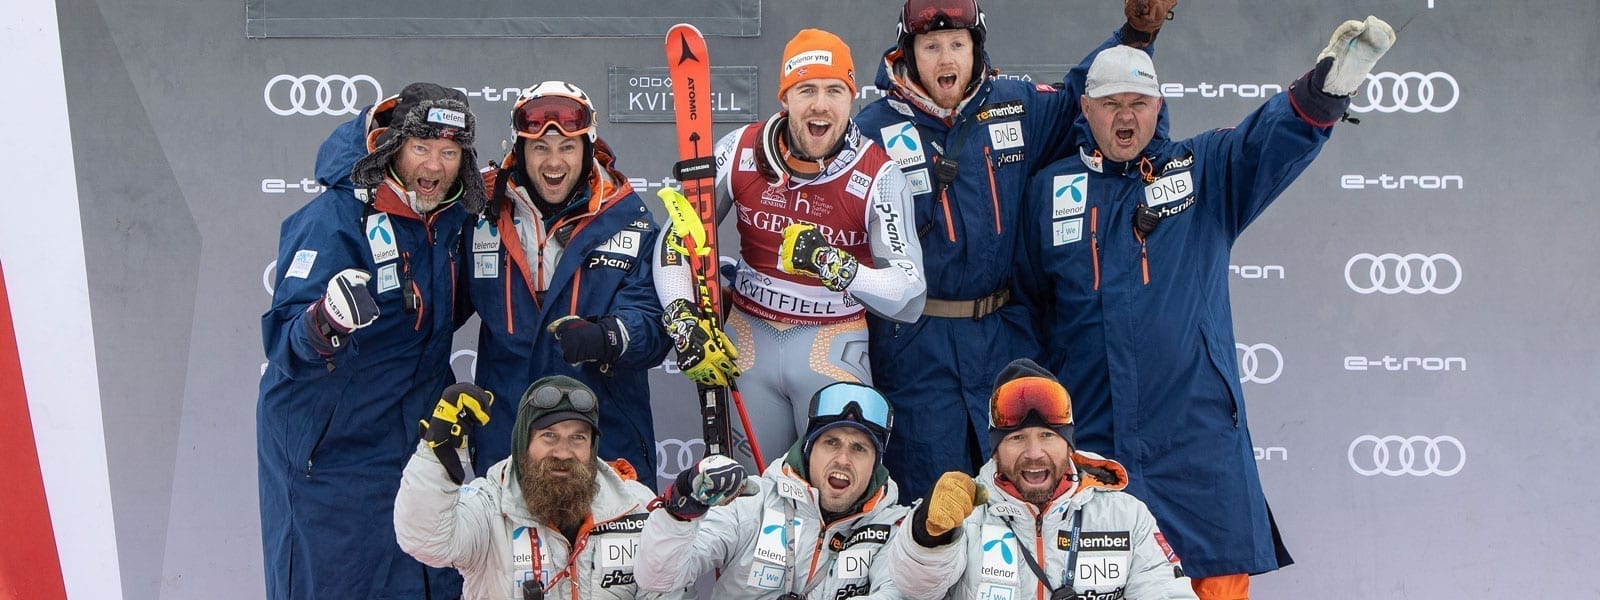 【フェニックス】Norway Alpine Team